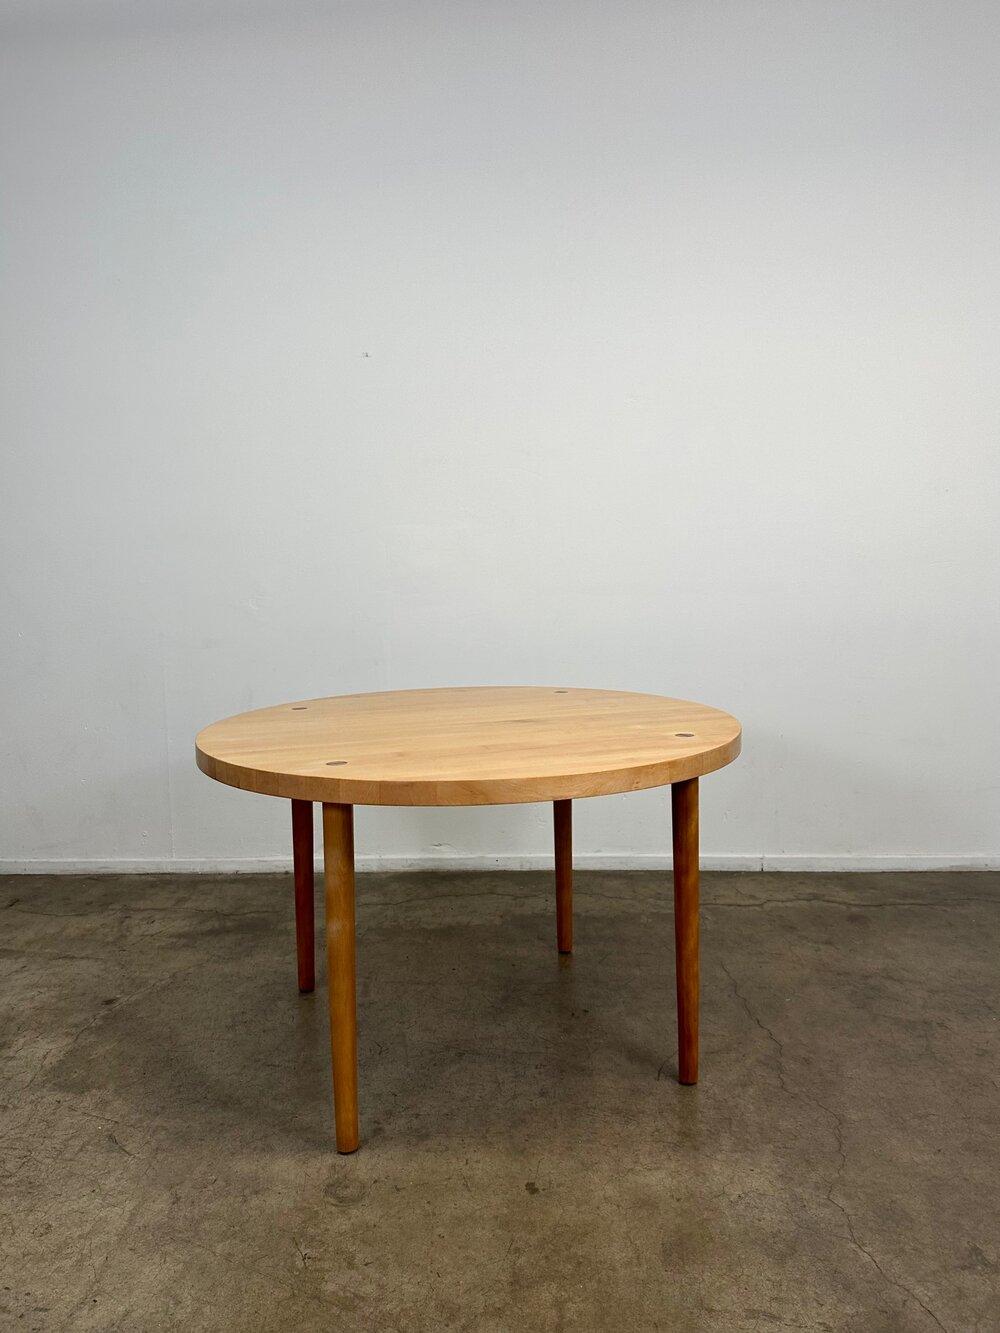 L48 H29.5. DÉGAGEMENT AUX GENOUX 27.

Table de salle à manger en érable massif datant des années 1960, conçue par Claude Bunyard pour Design/One. L'article offre des matériaux de haute qualité avec un design minimaliste. Des inserts très subtils de